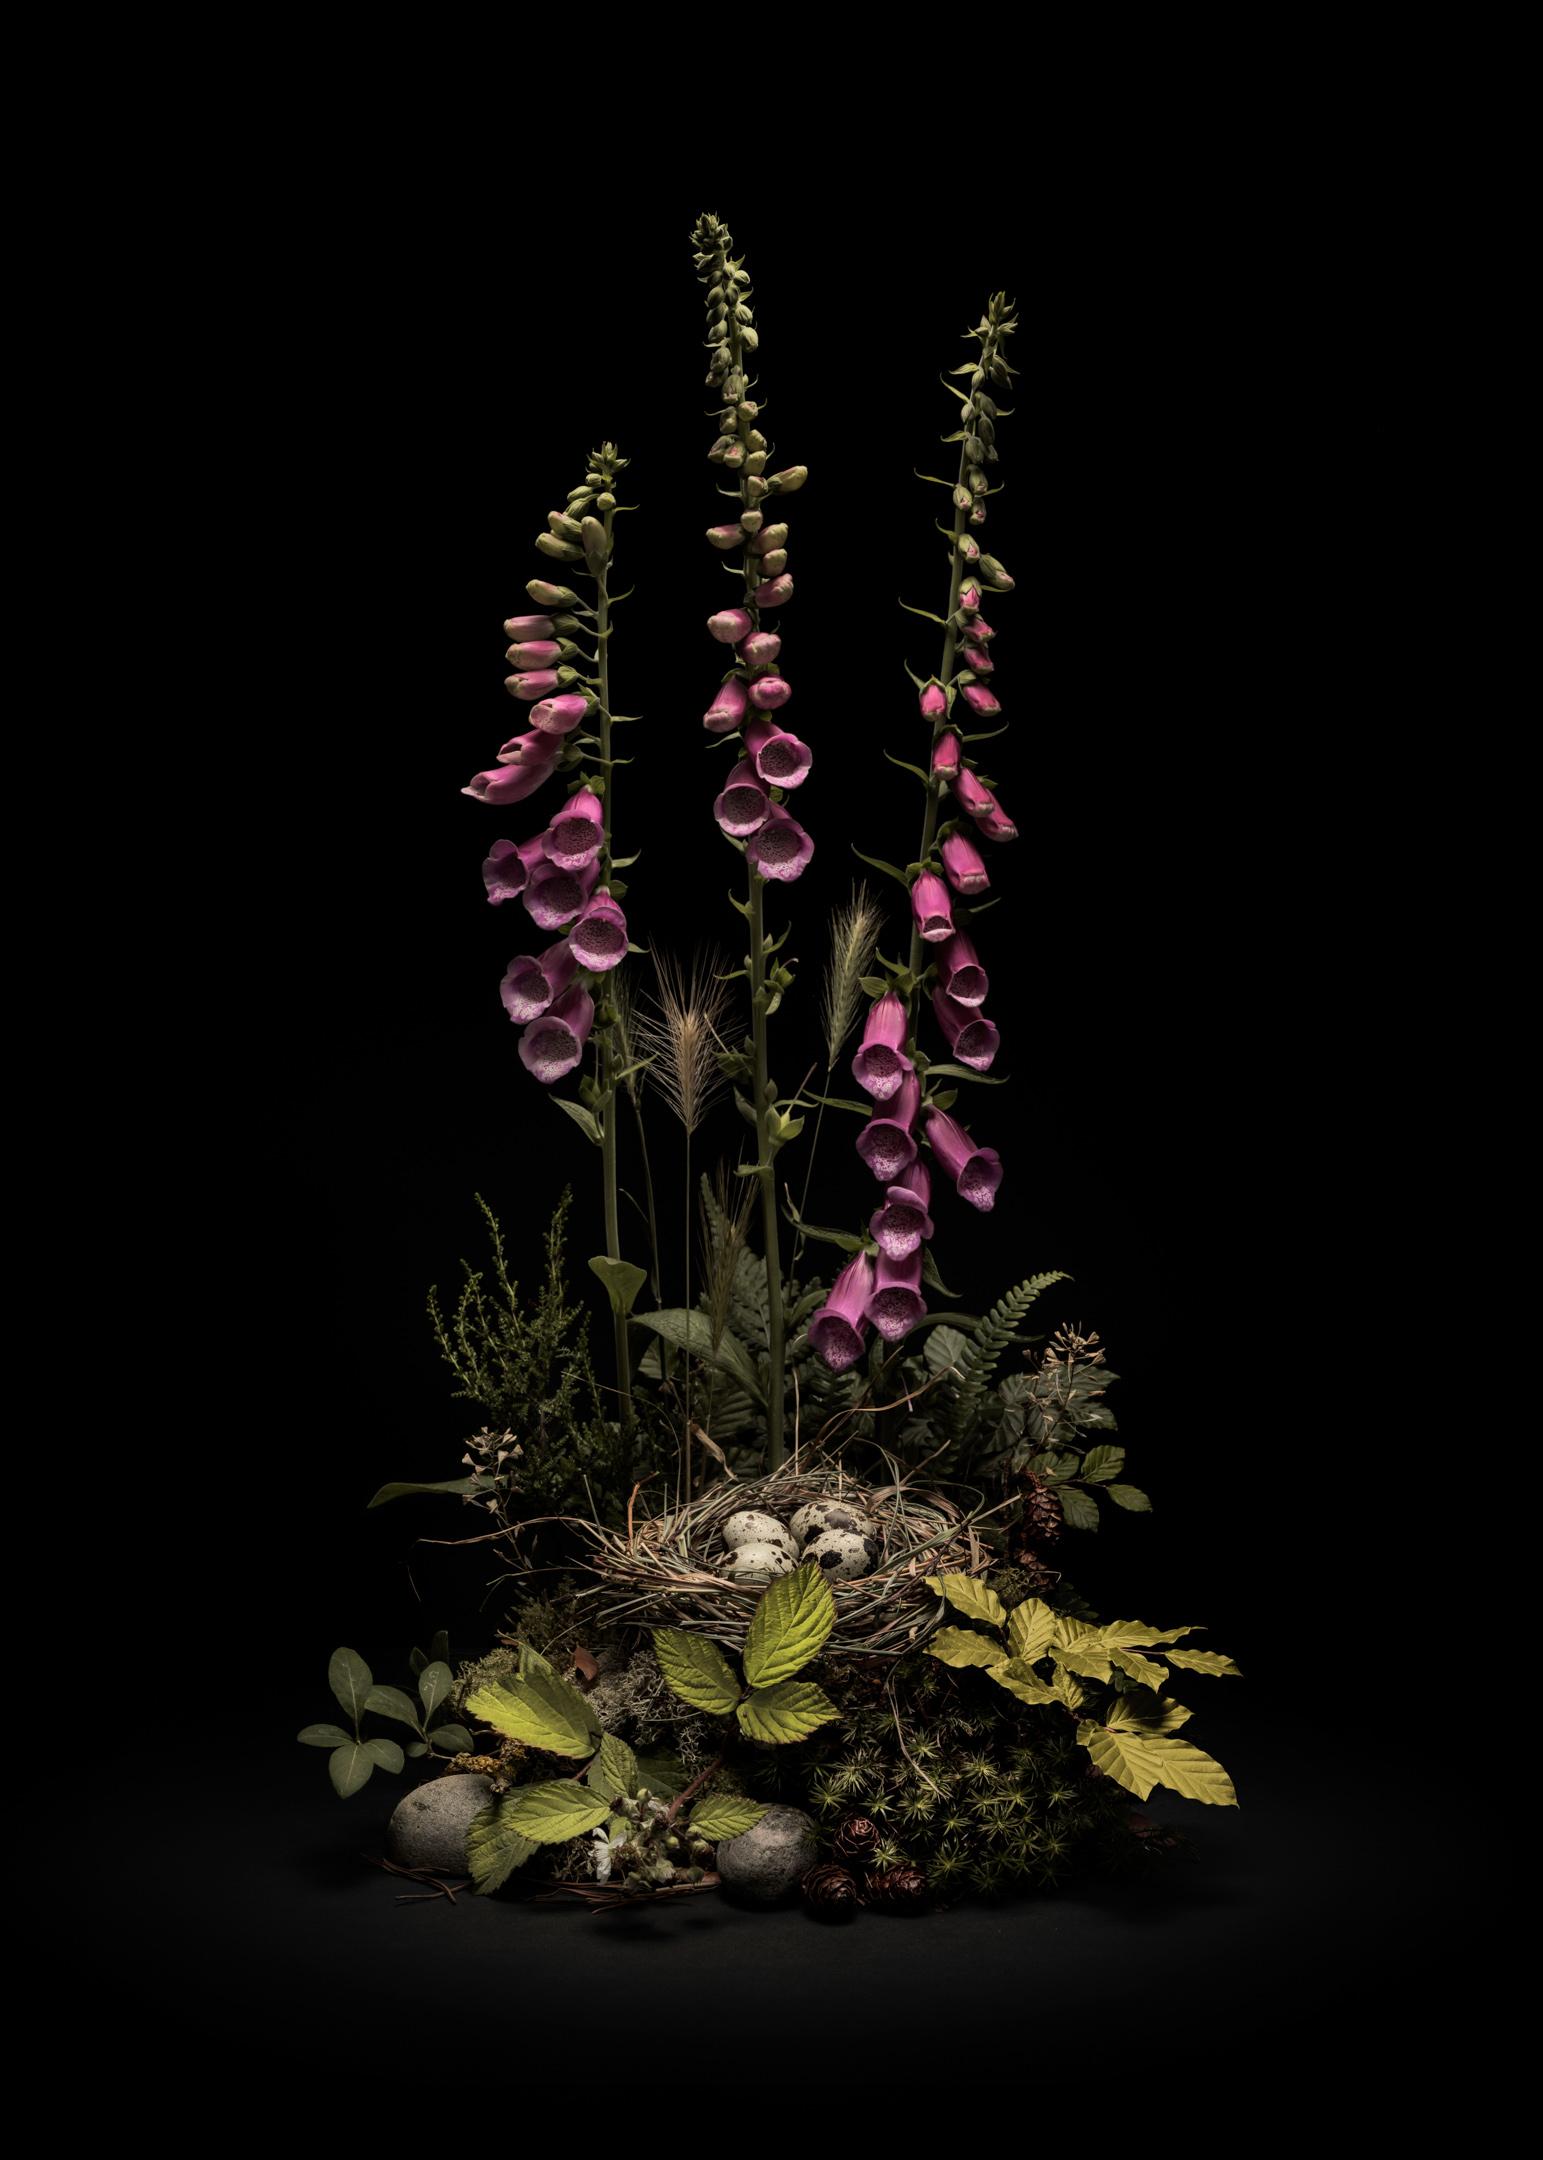 Dar Flora #5, Foxgloves de mayo, Un arreglo floral de flores y plantas silvestres